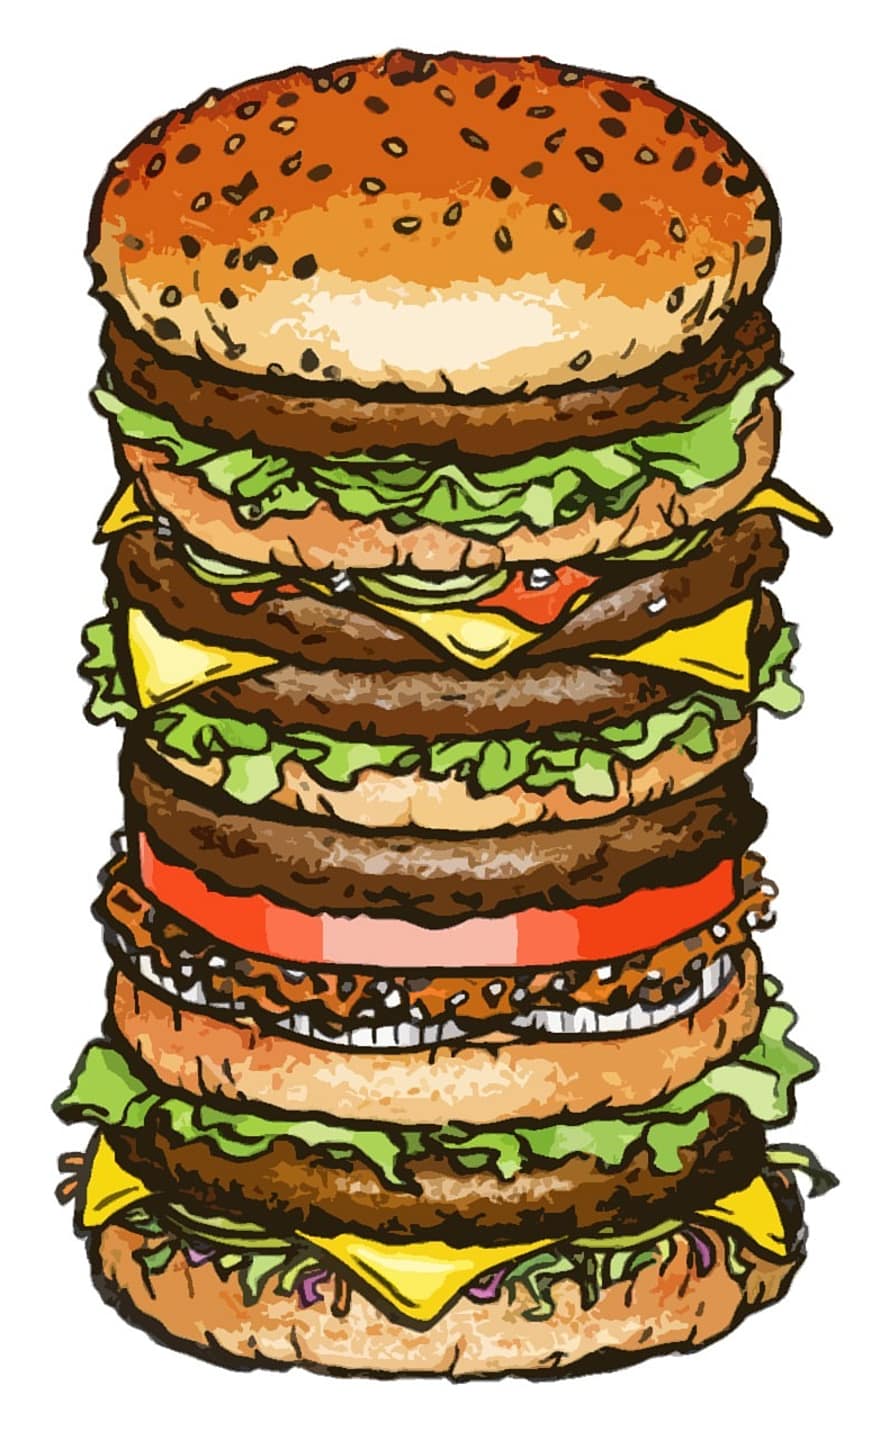 Hamburger, groß, Größe, Mittagessen, Lebensmittel